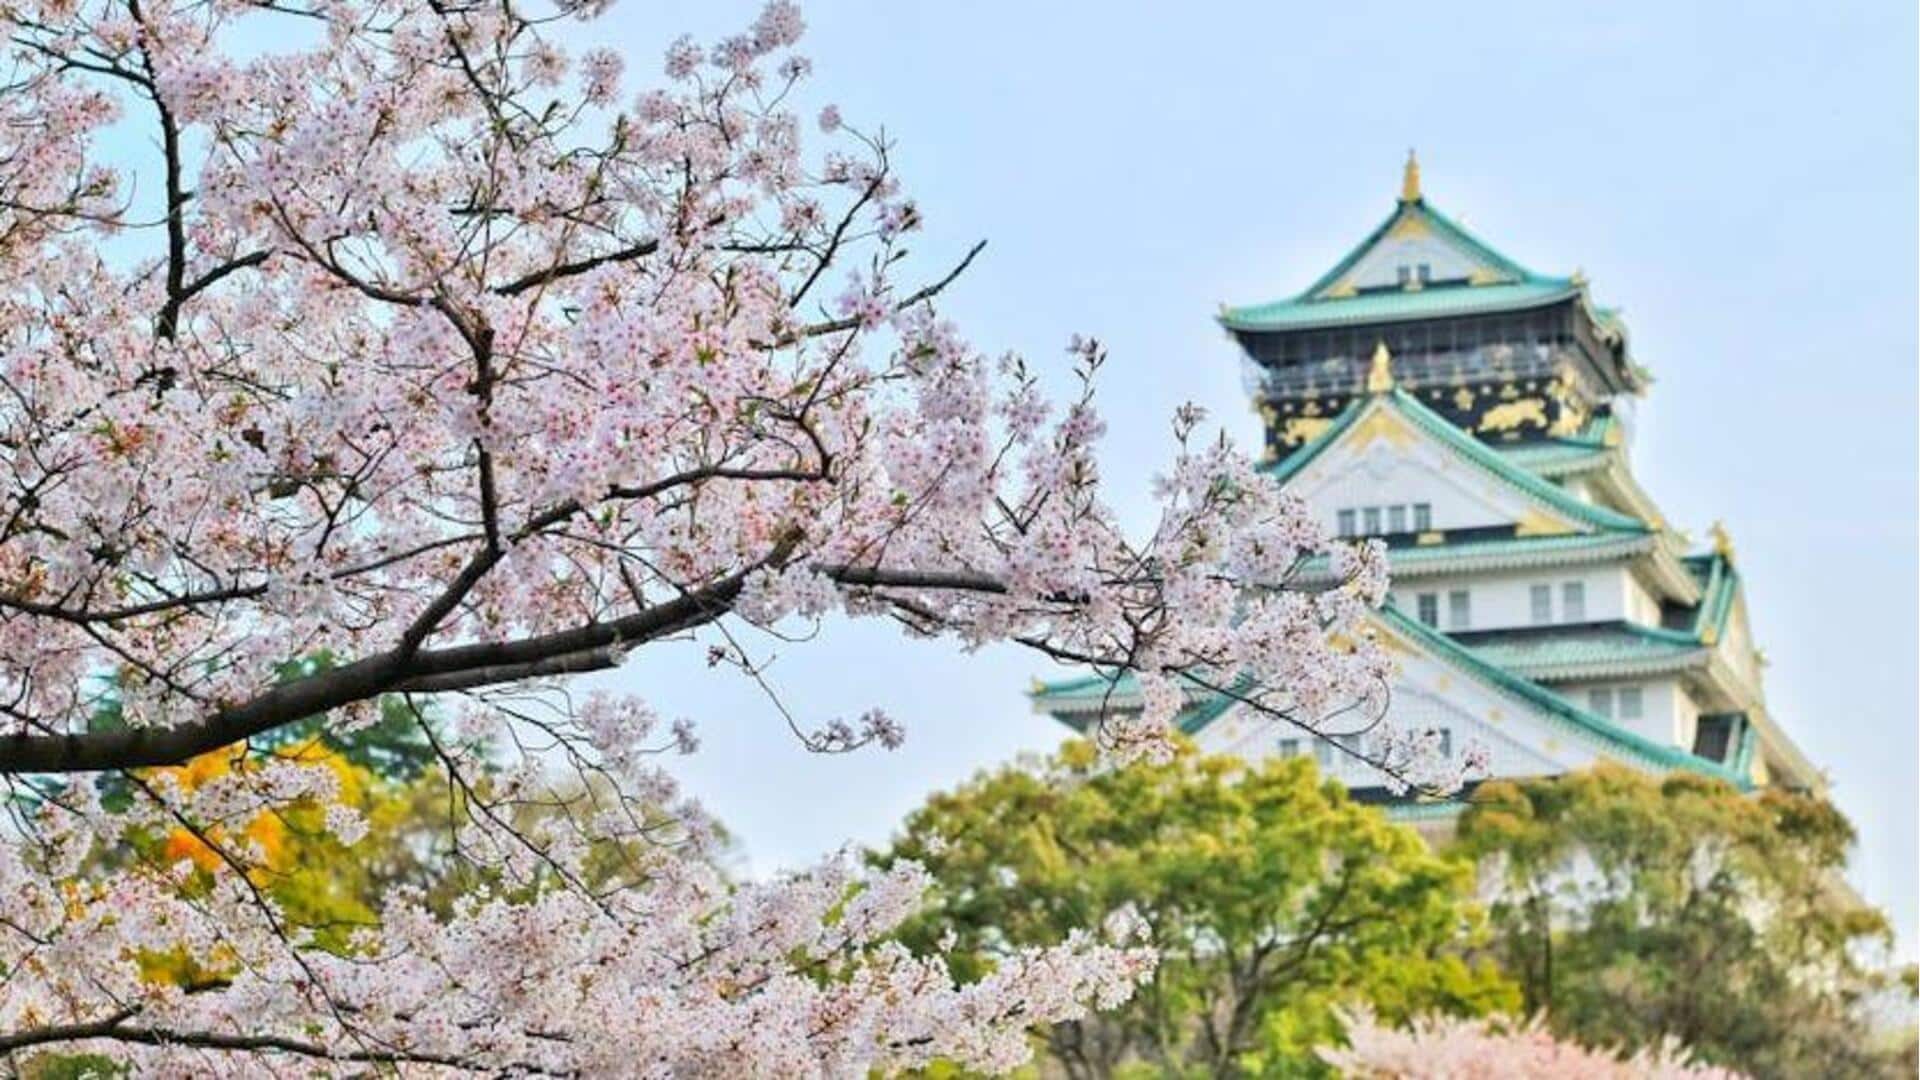 Saksikan pemandangan bunga sakura terbaik di Tokyo dengan panduan ini